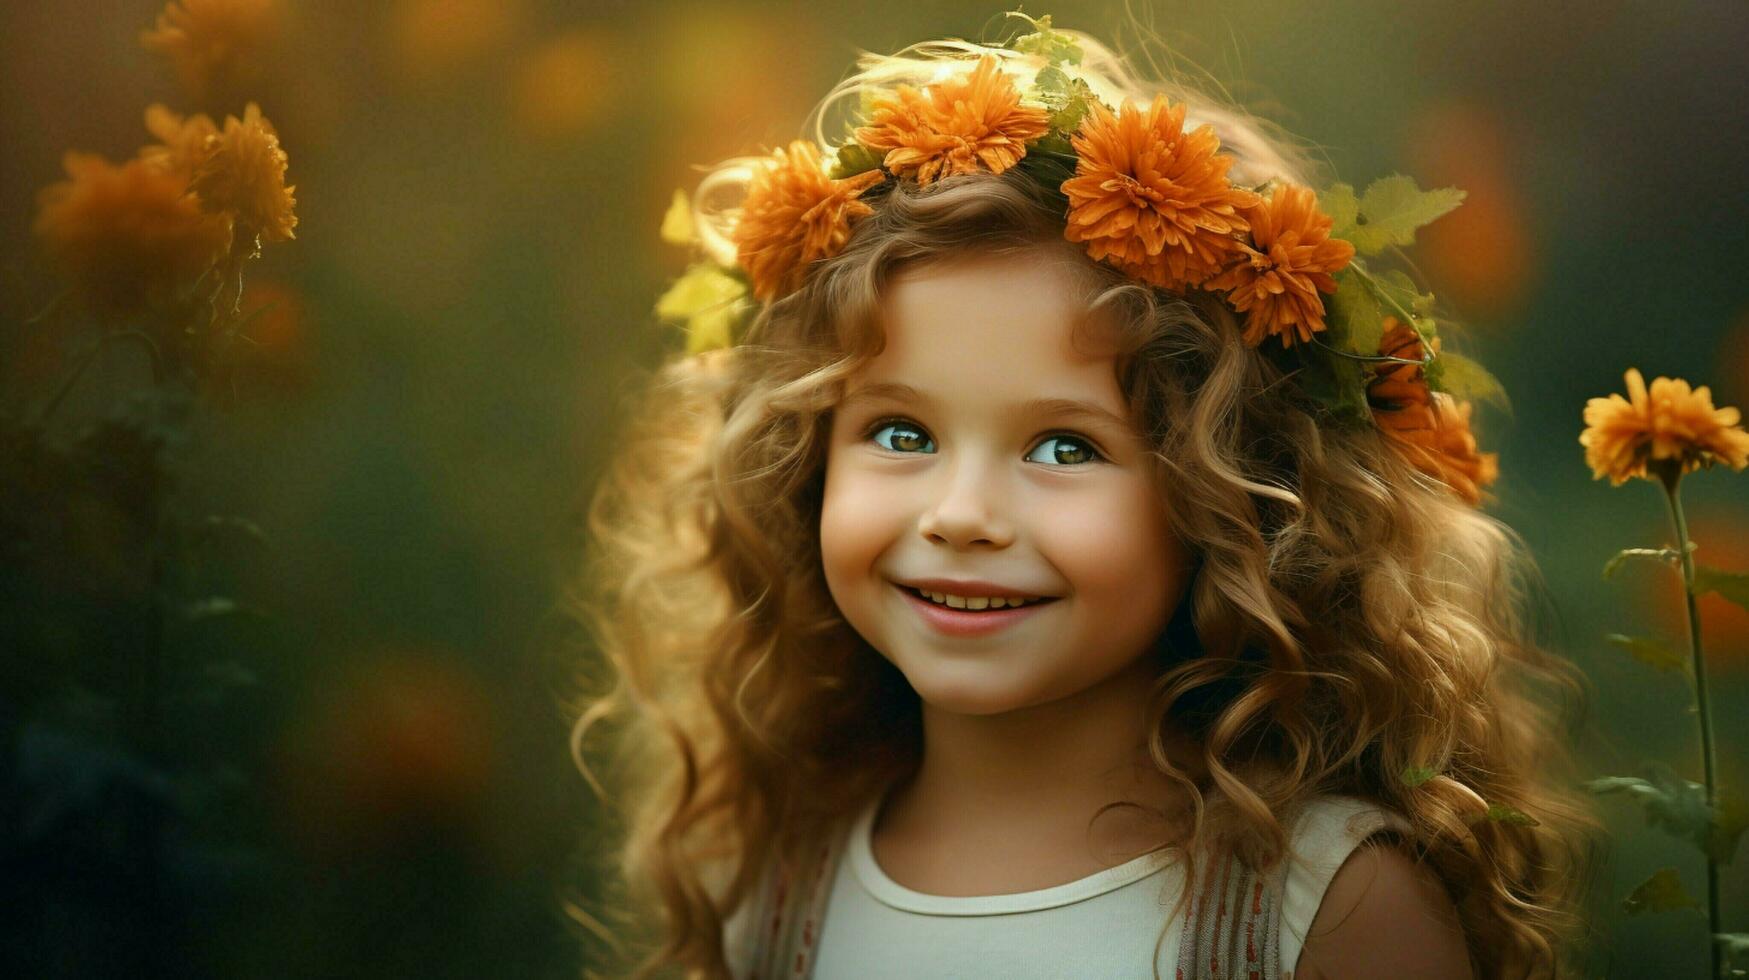 sonriente niño al aire libre felicidad en naturaleza linda retrato foto